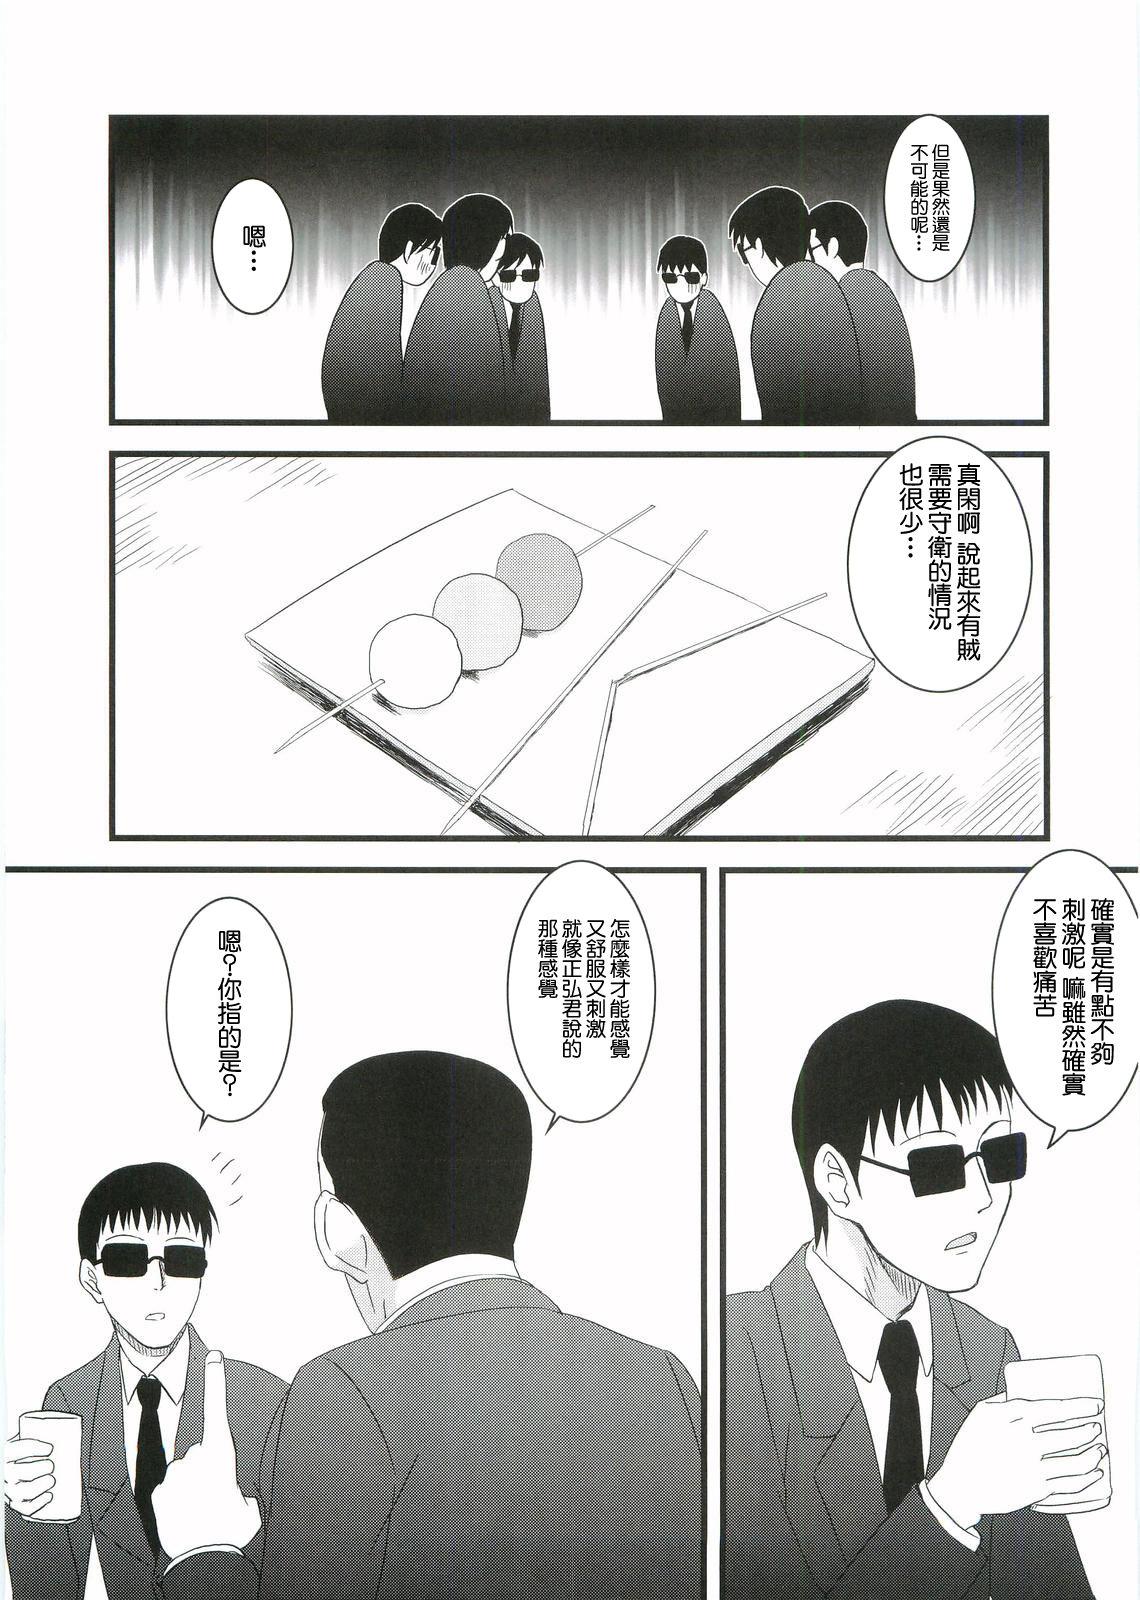 Boobies Kouhukuya no Ehon Gokujo 2 - Gokujou seitokai | best student council Imvu - Page 8